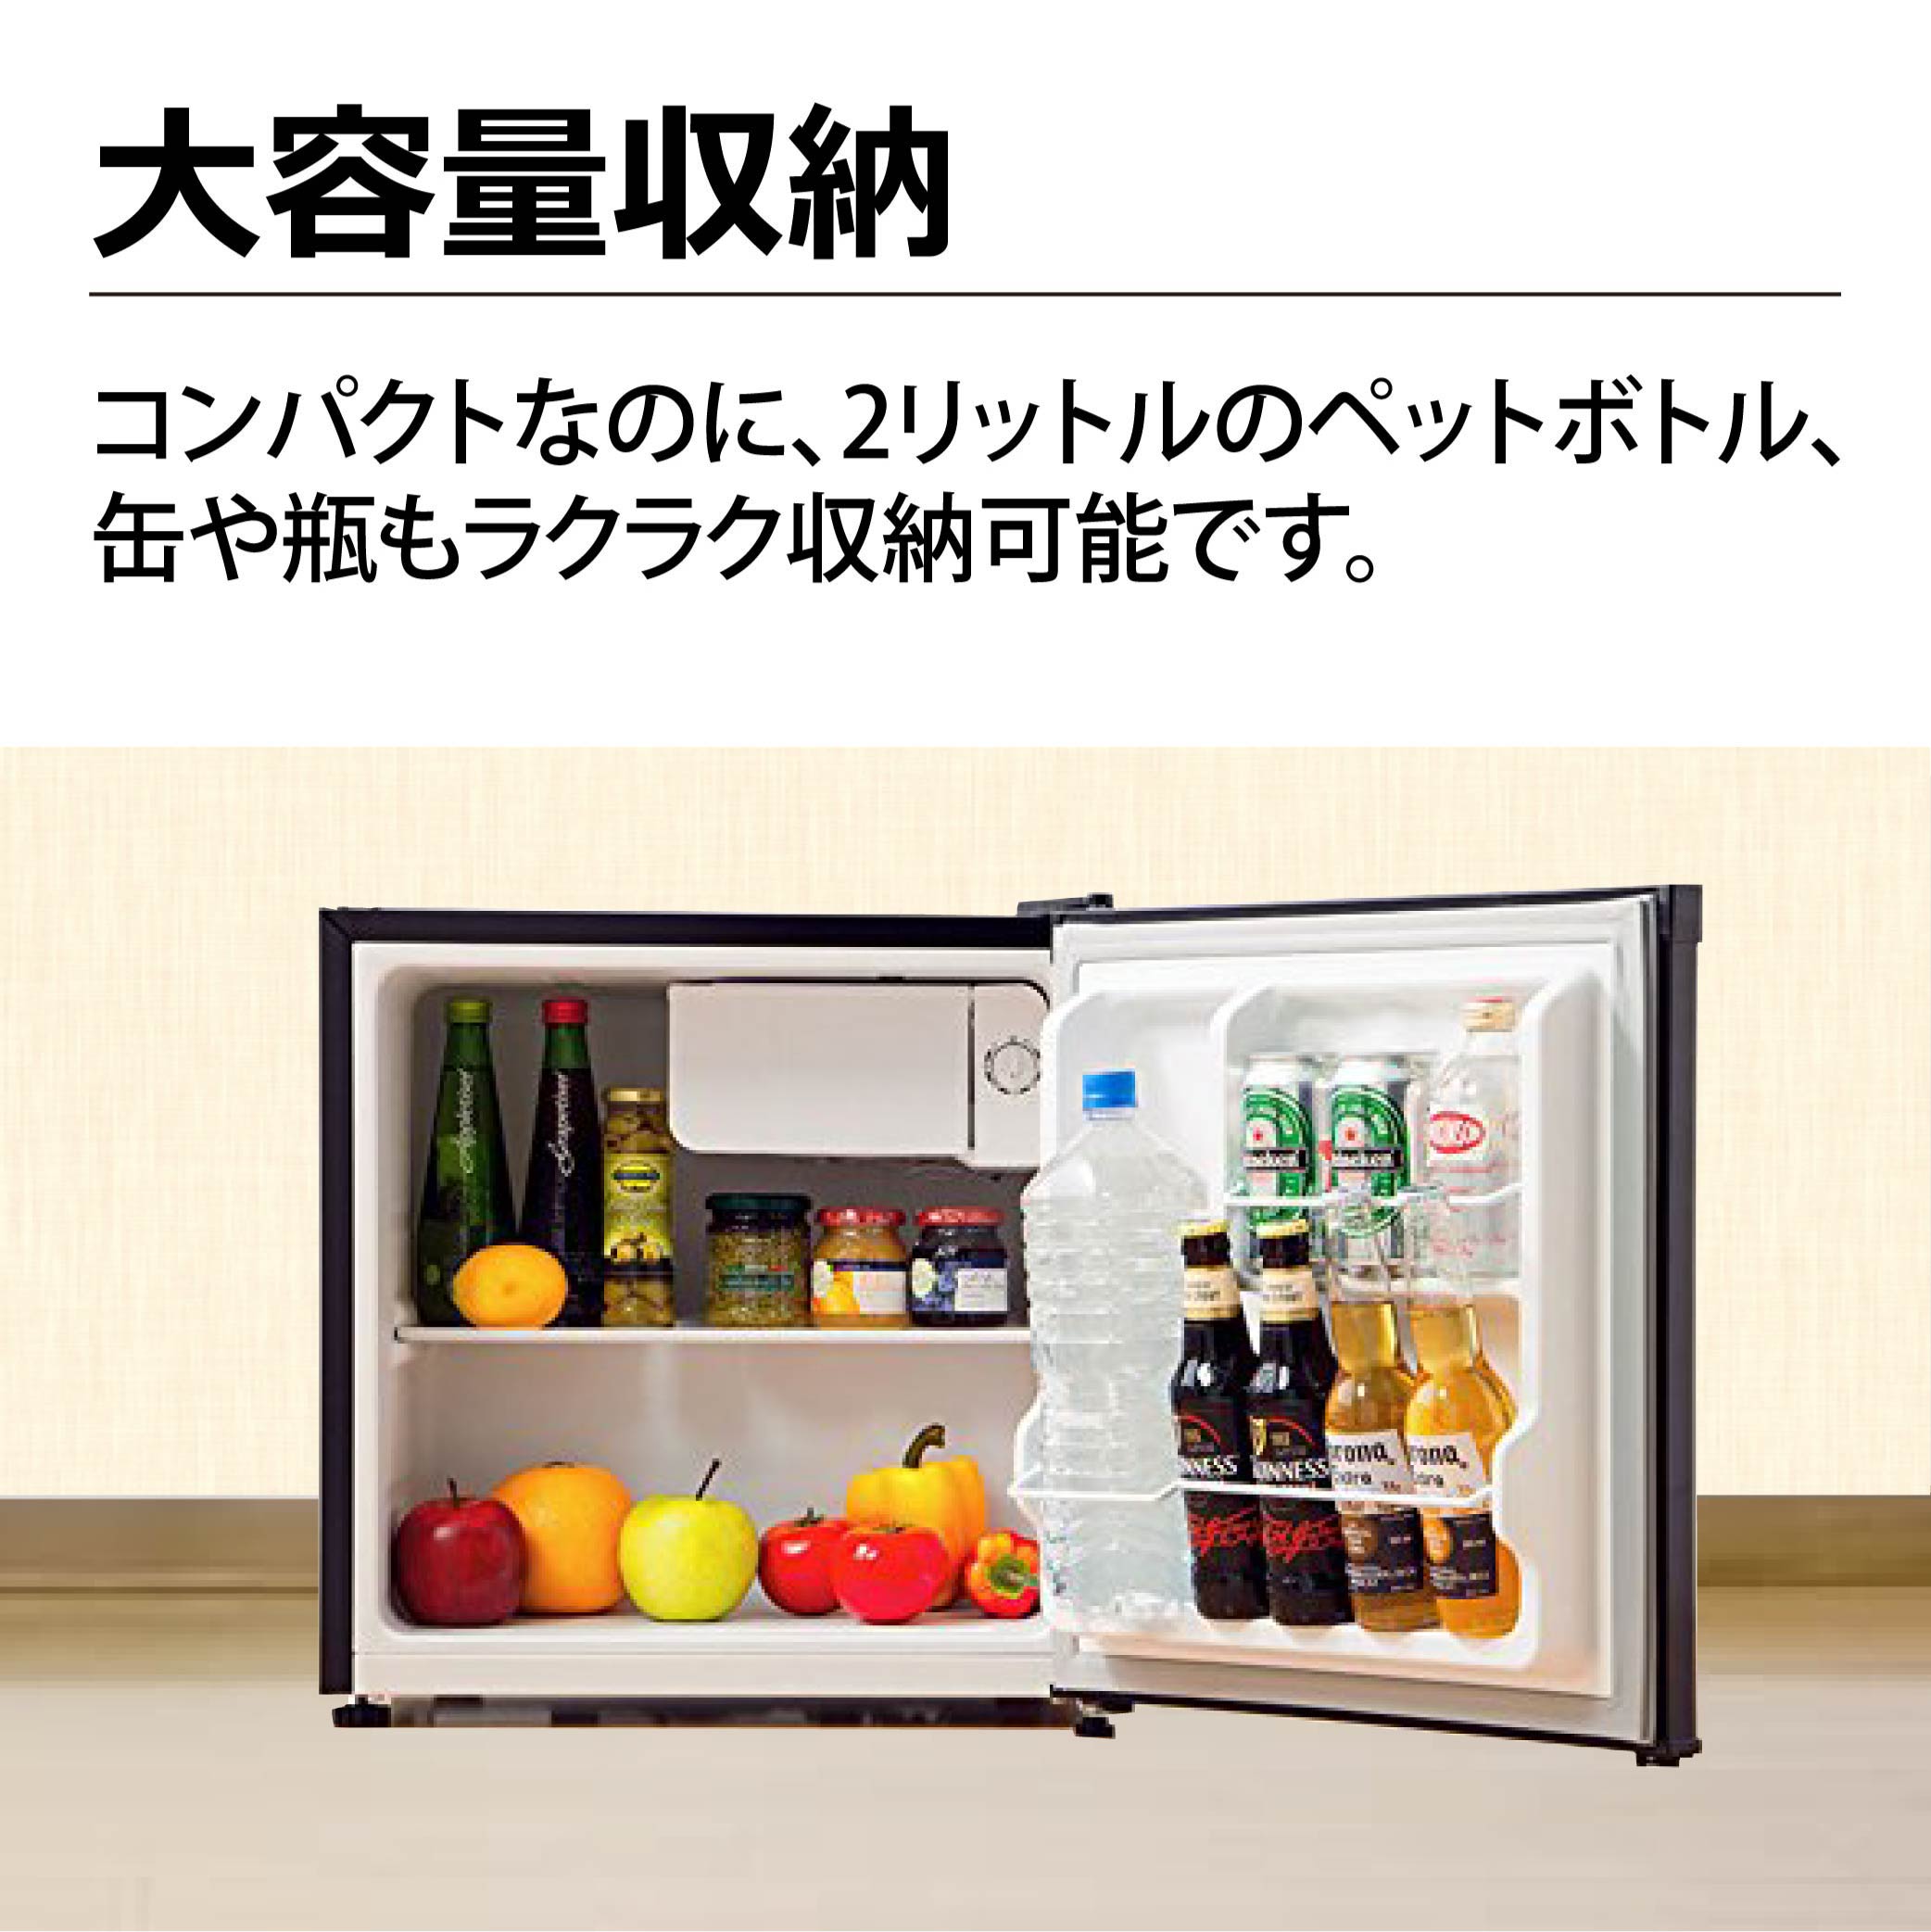 東京Deco 冷蔵庫 46L 1ドア 直冷式 小型 幅47cm ダークウッド 左右開き可能 製氷室付き/耐熱天板 7段階温度調整 コンパ 